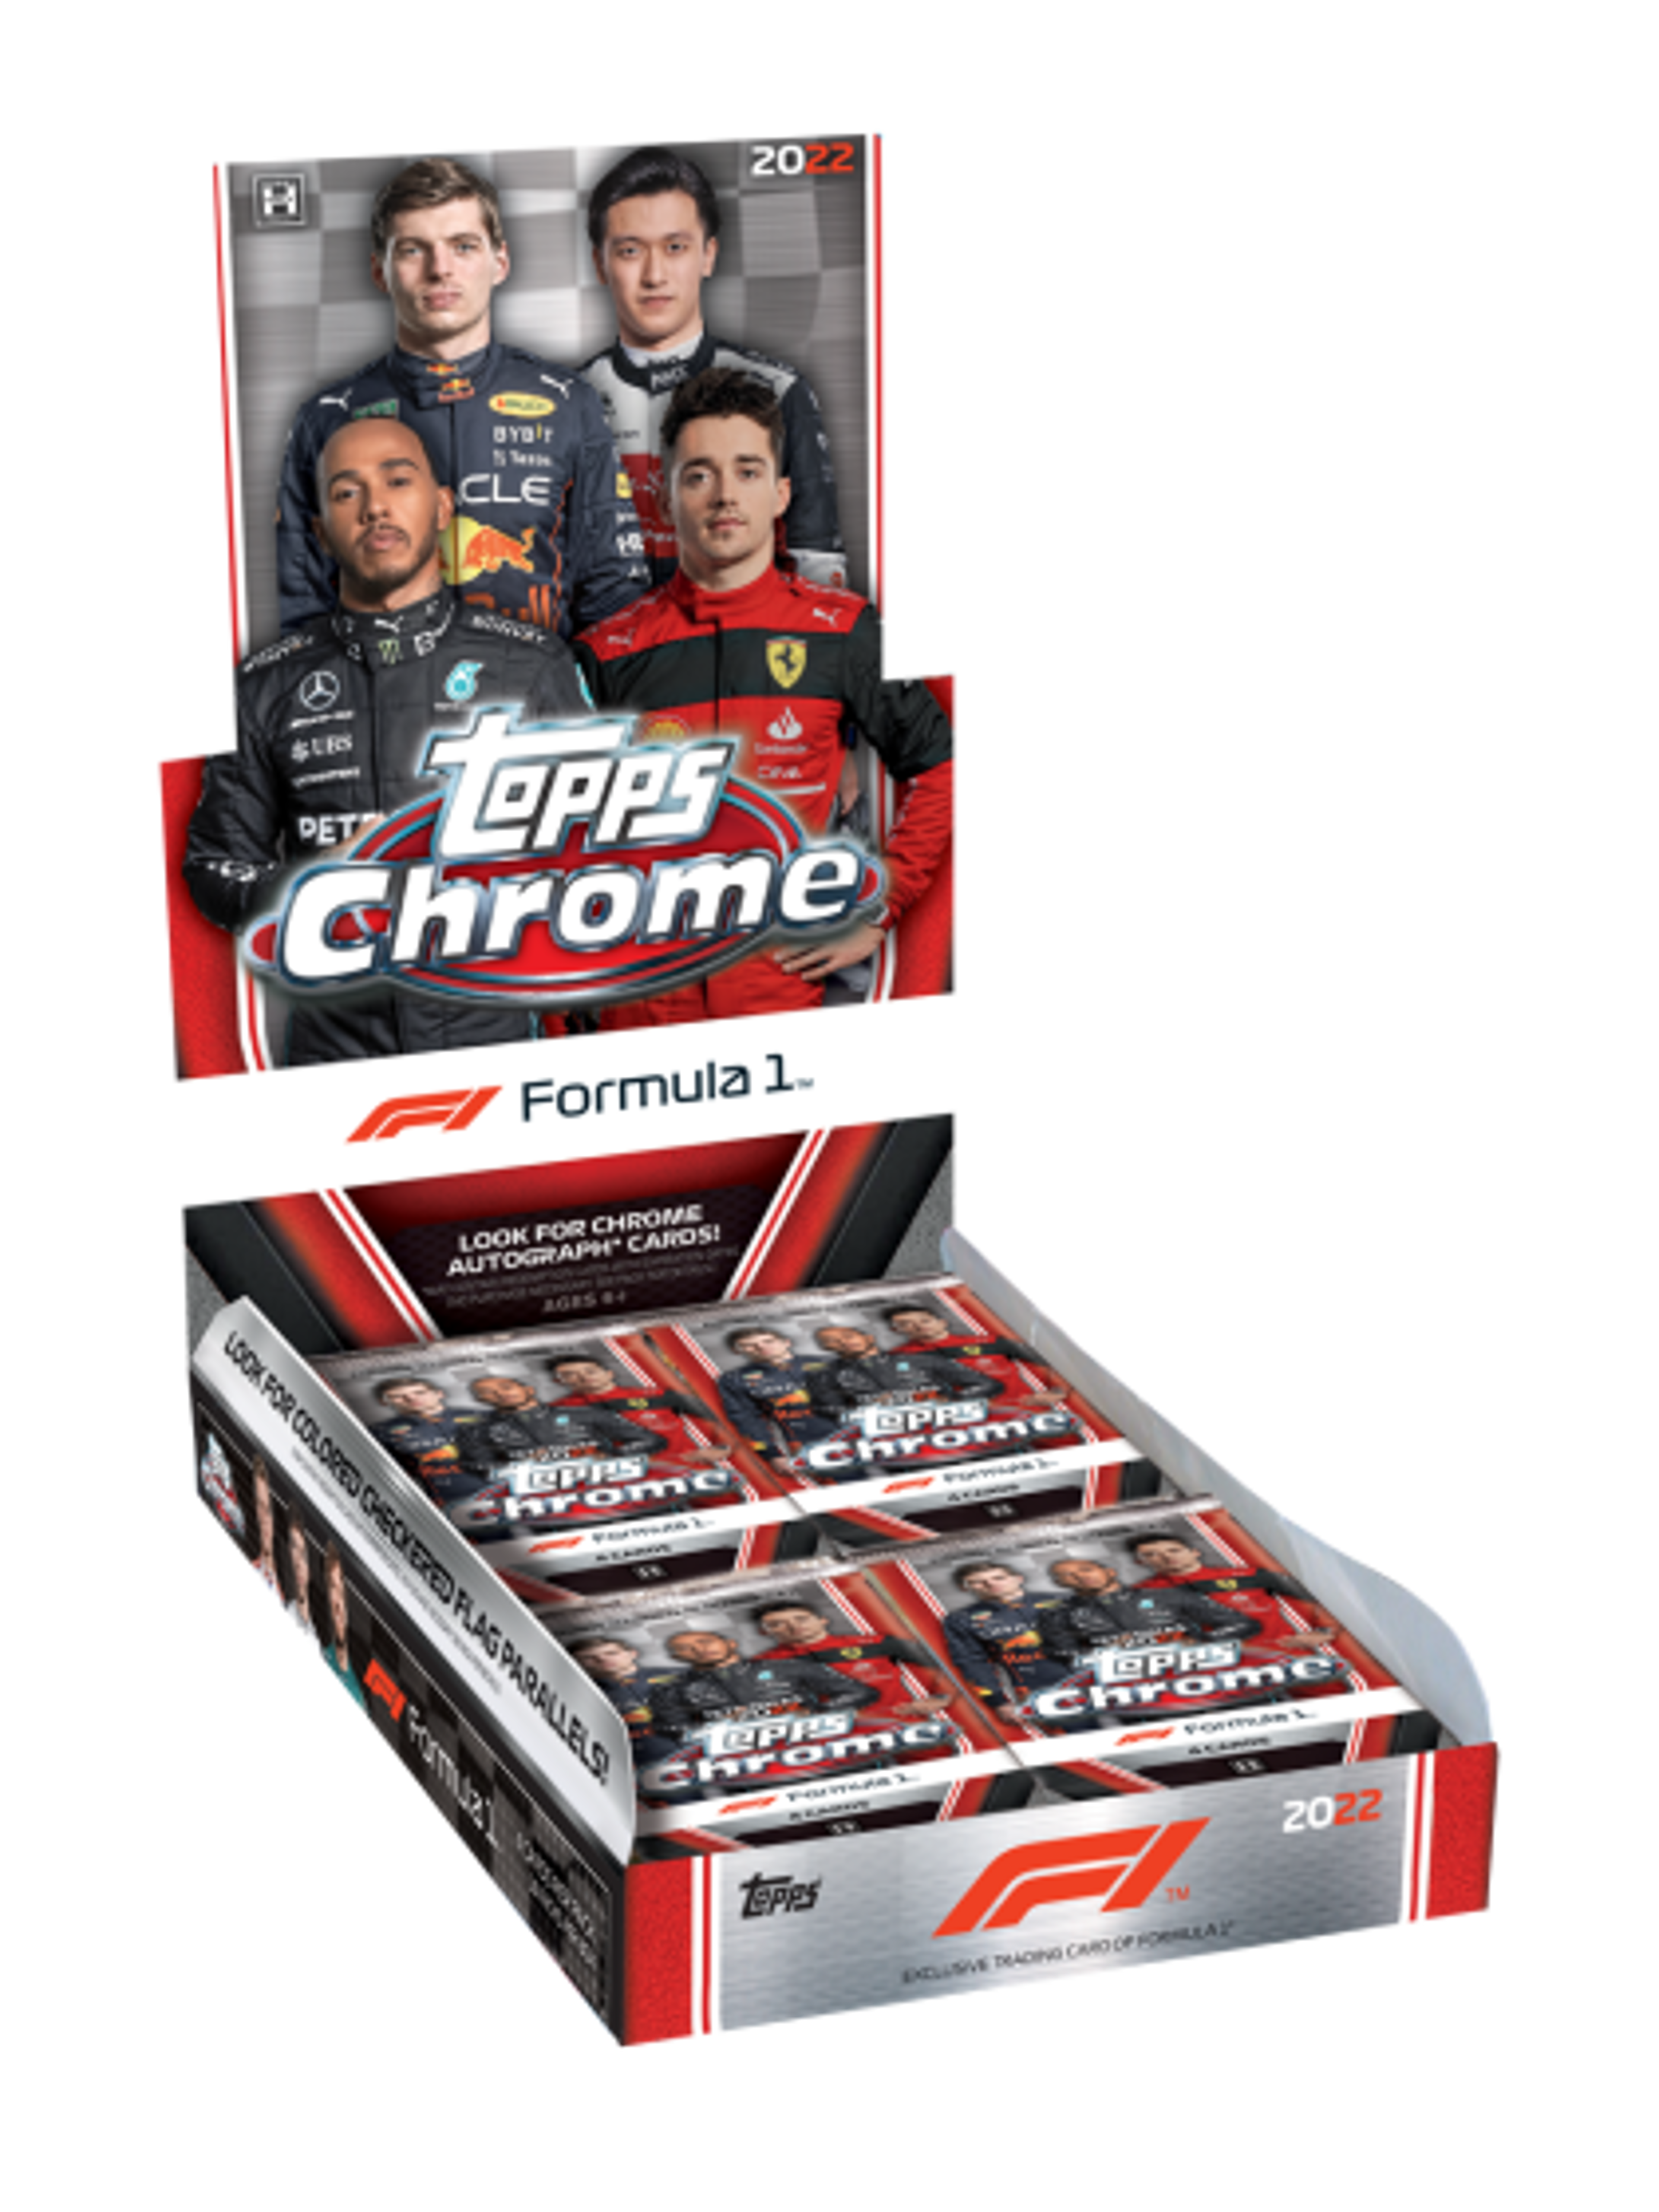 2022 Topps Chrome F1 Hobby Box